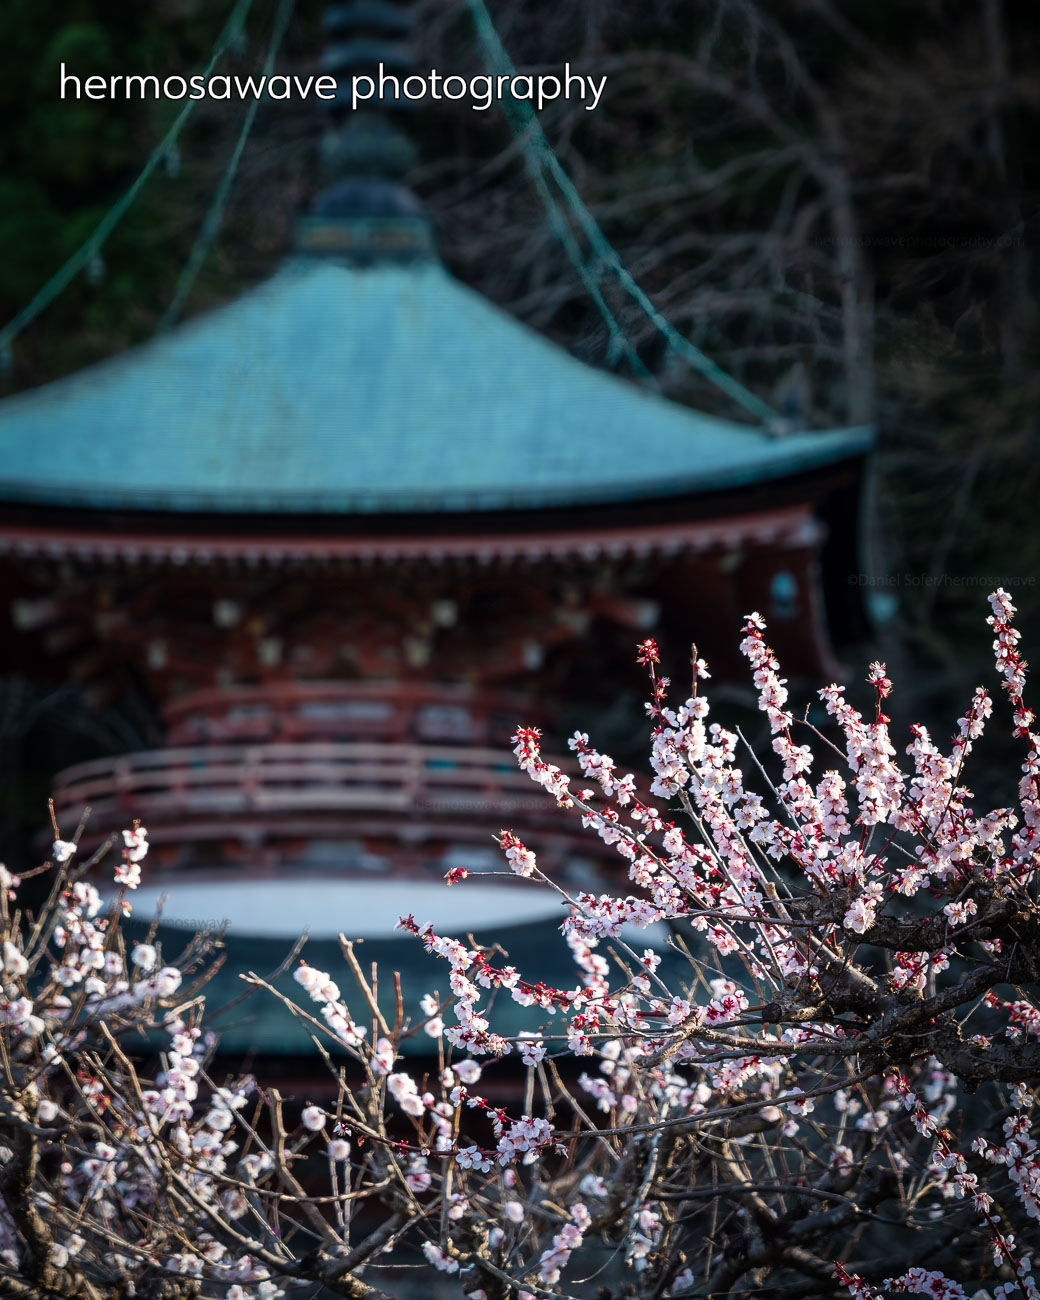 Horin-ji Pagoda・法輪寺の塔